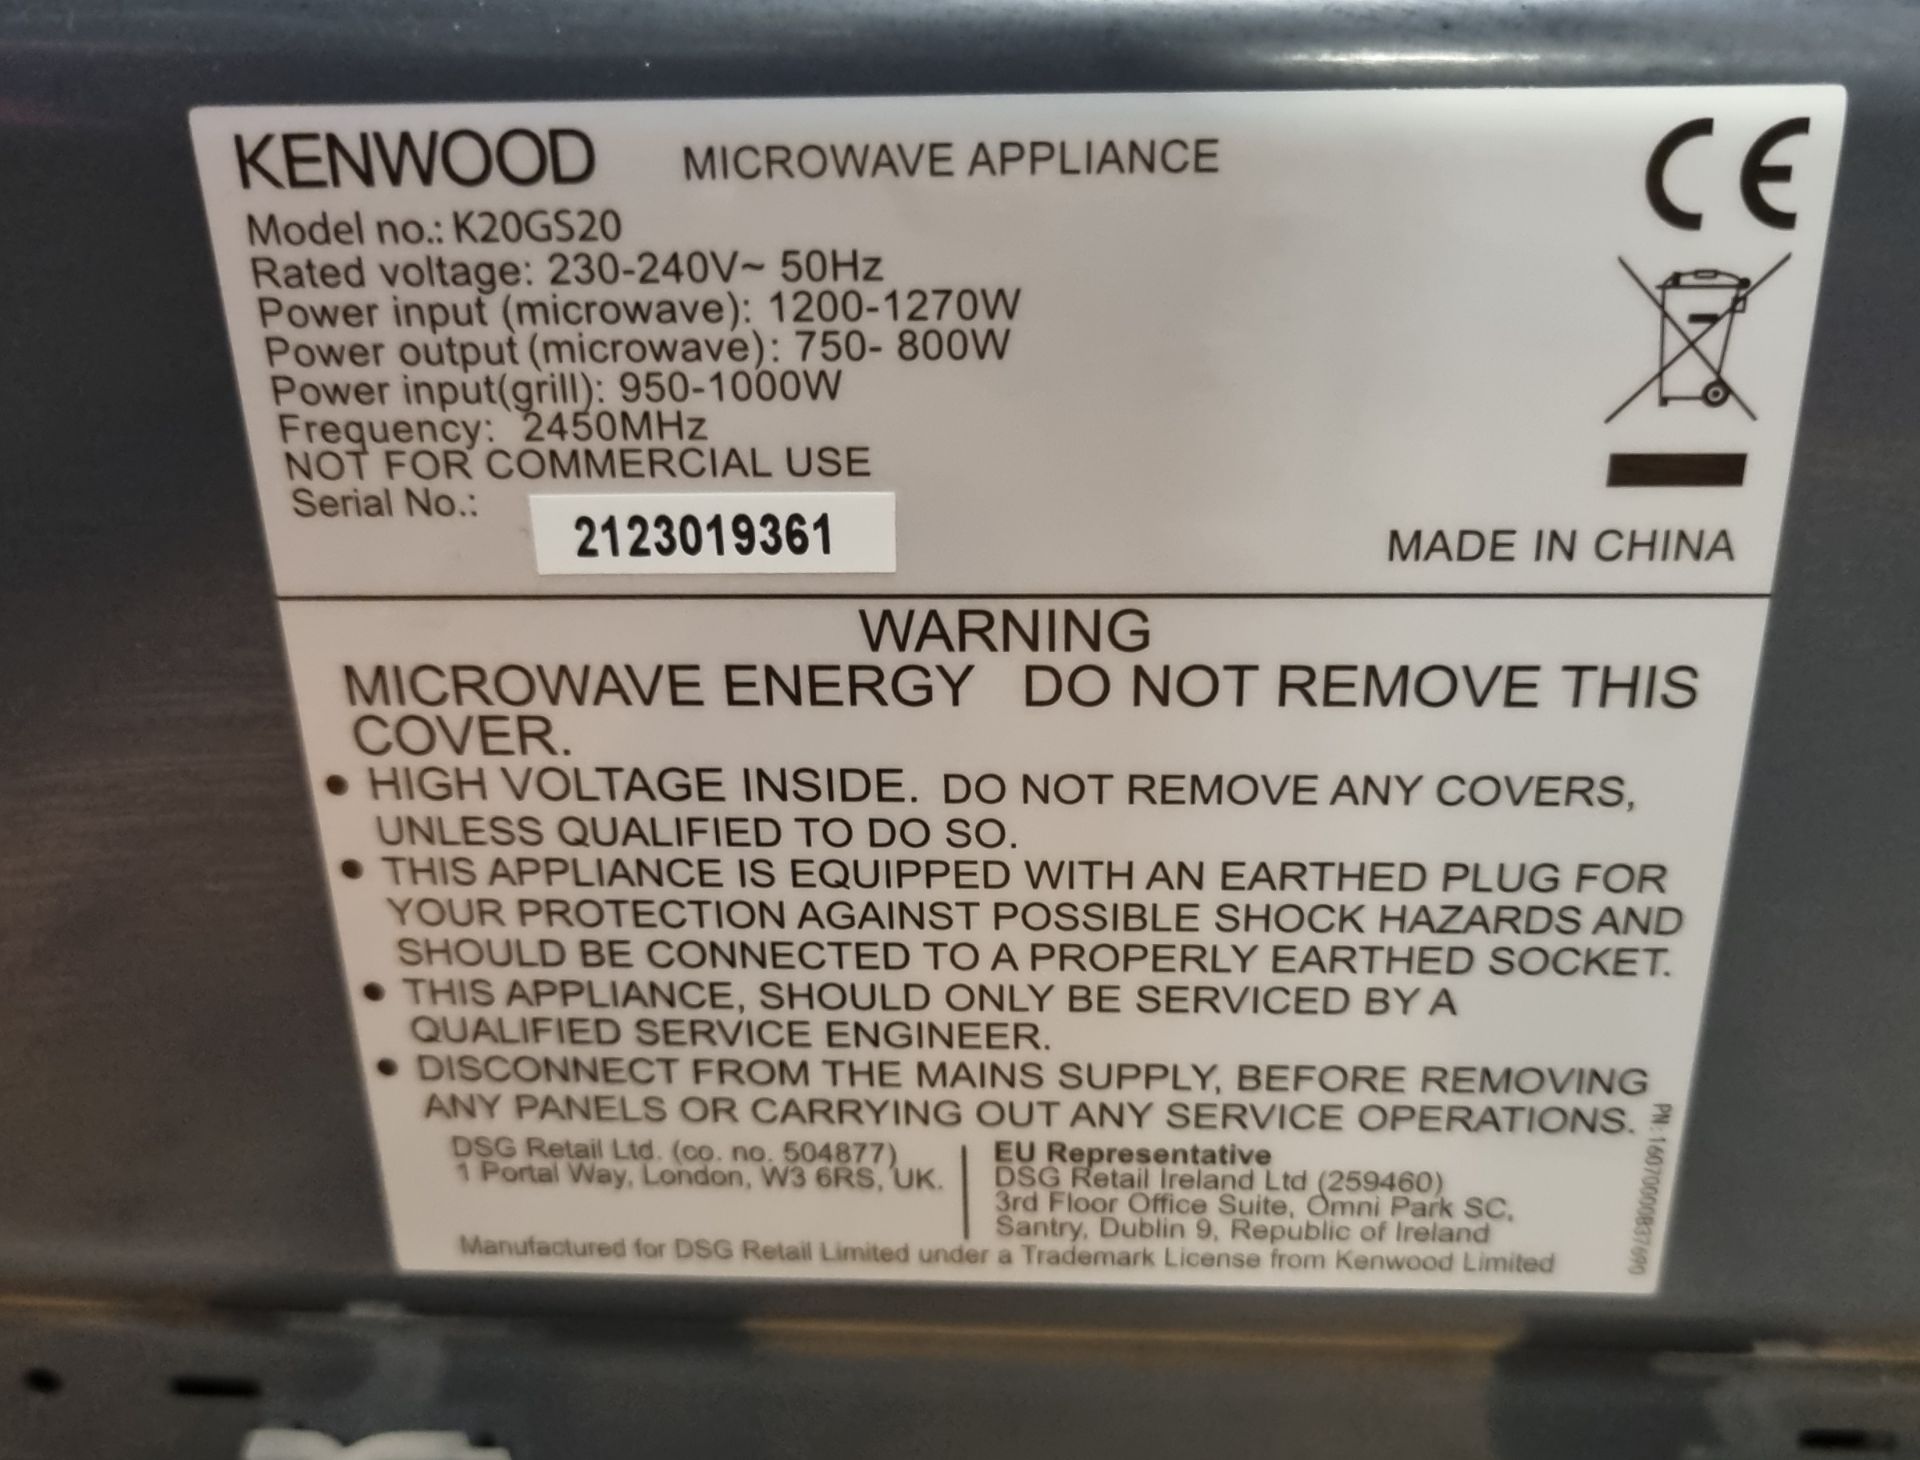 Kenwood K20GS20 microwave - Image 4 of 4